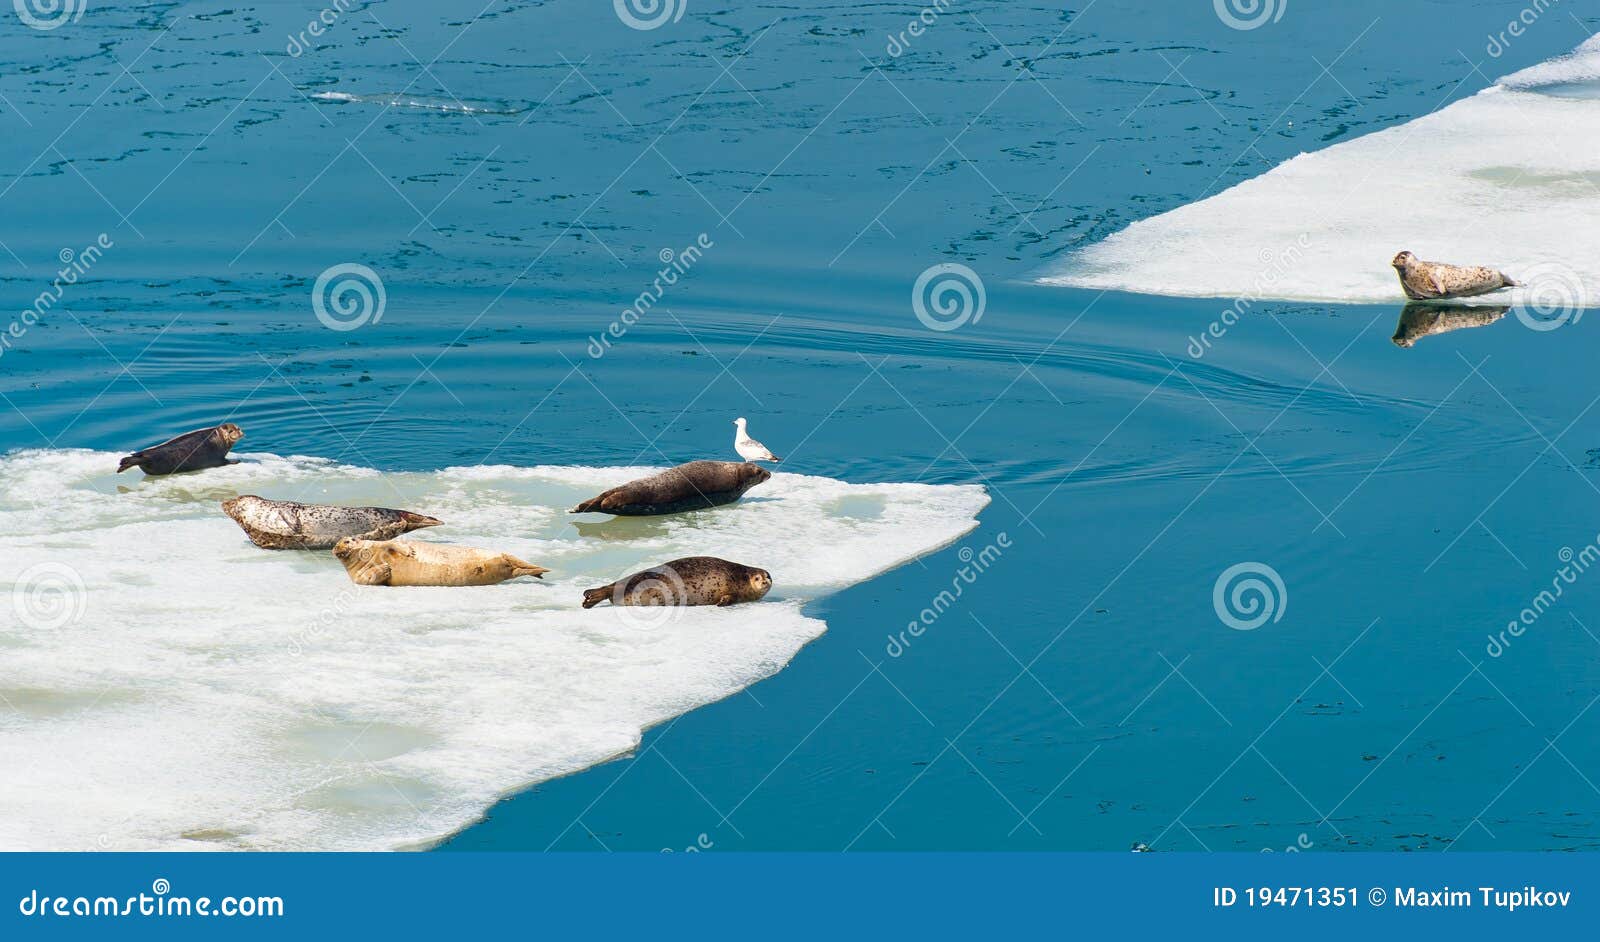 larga seals resting on floating ice